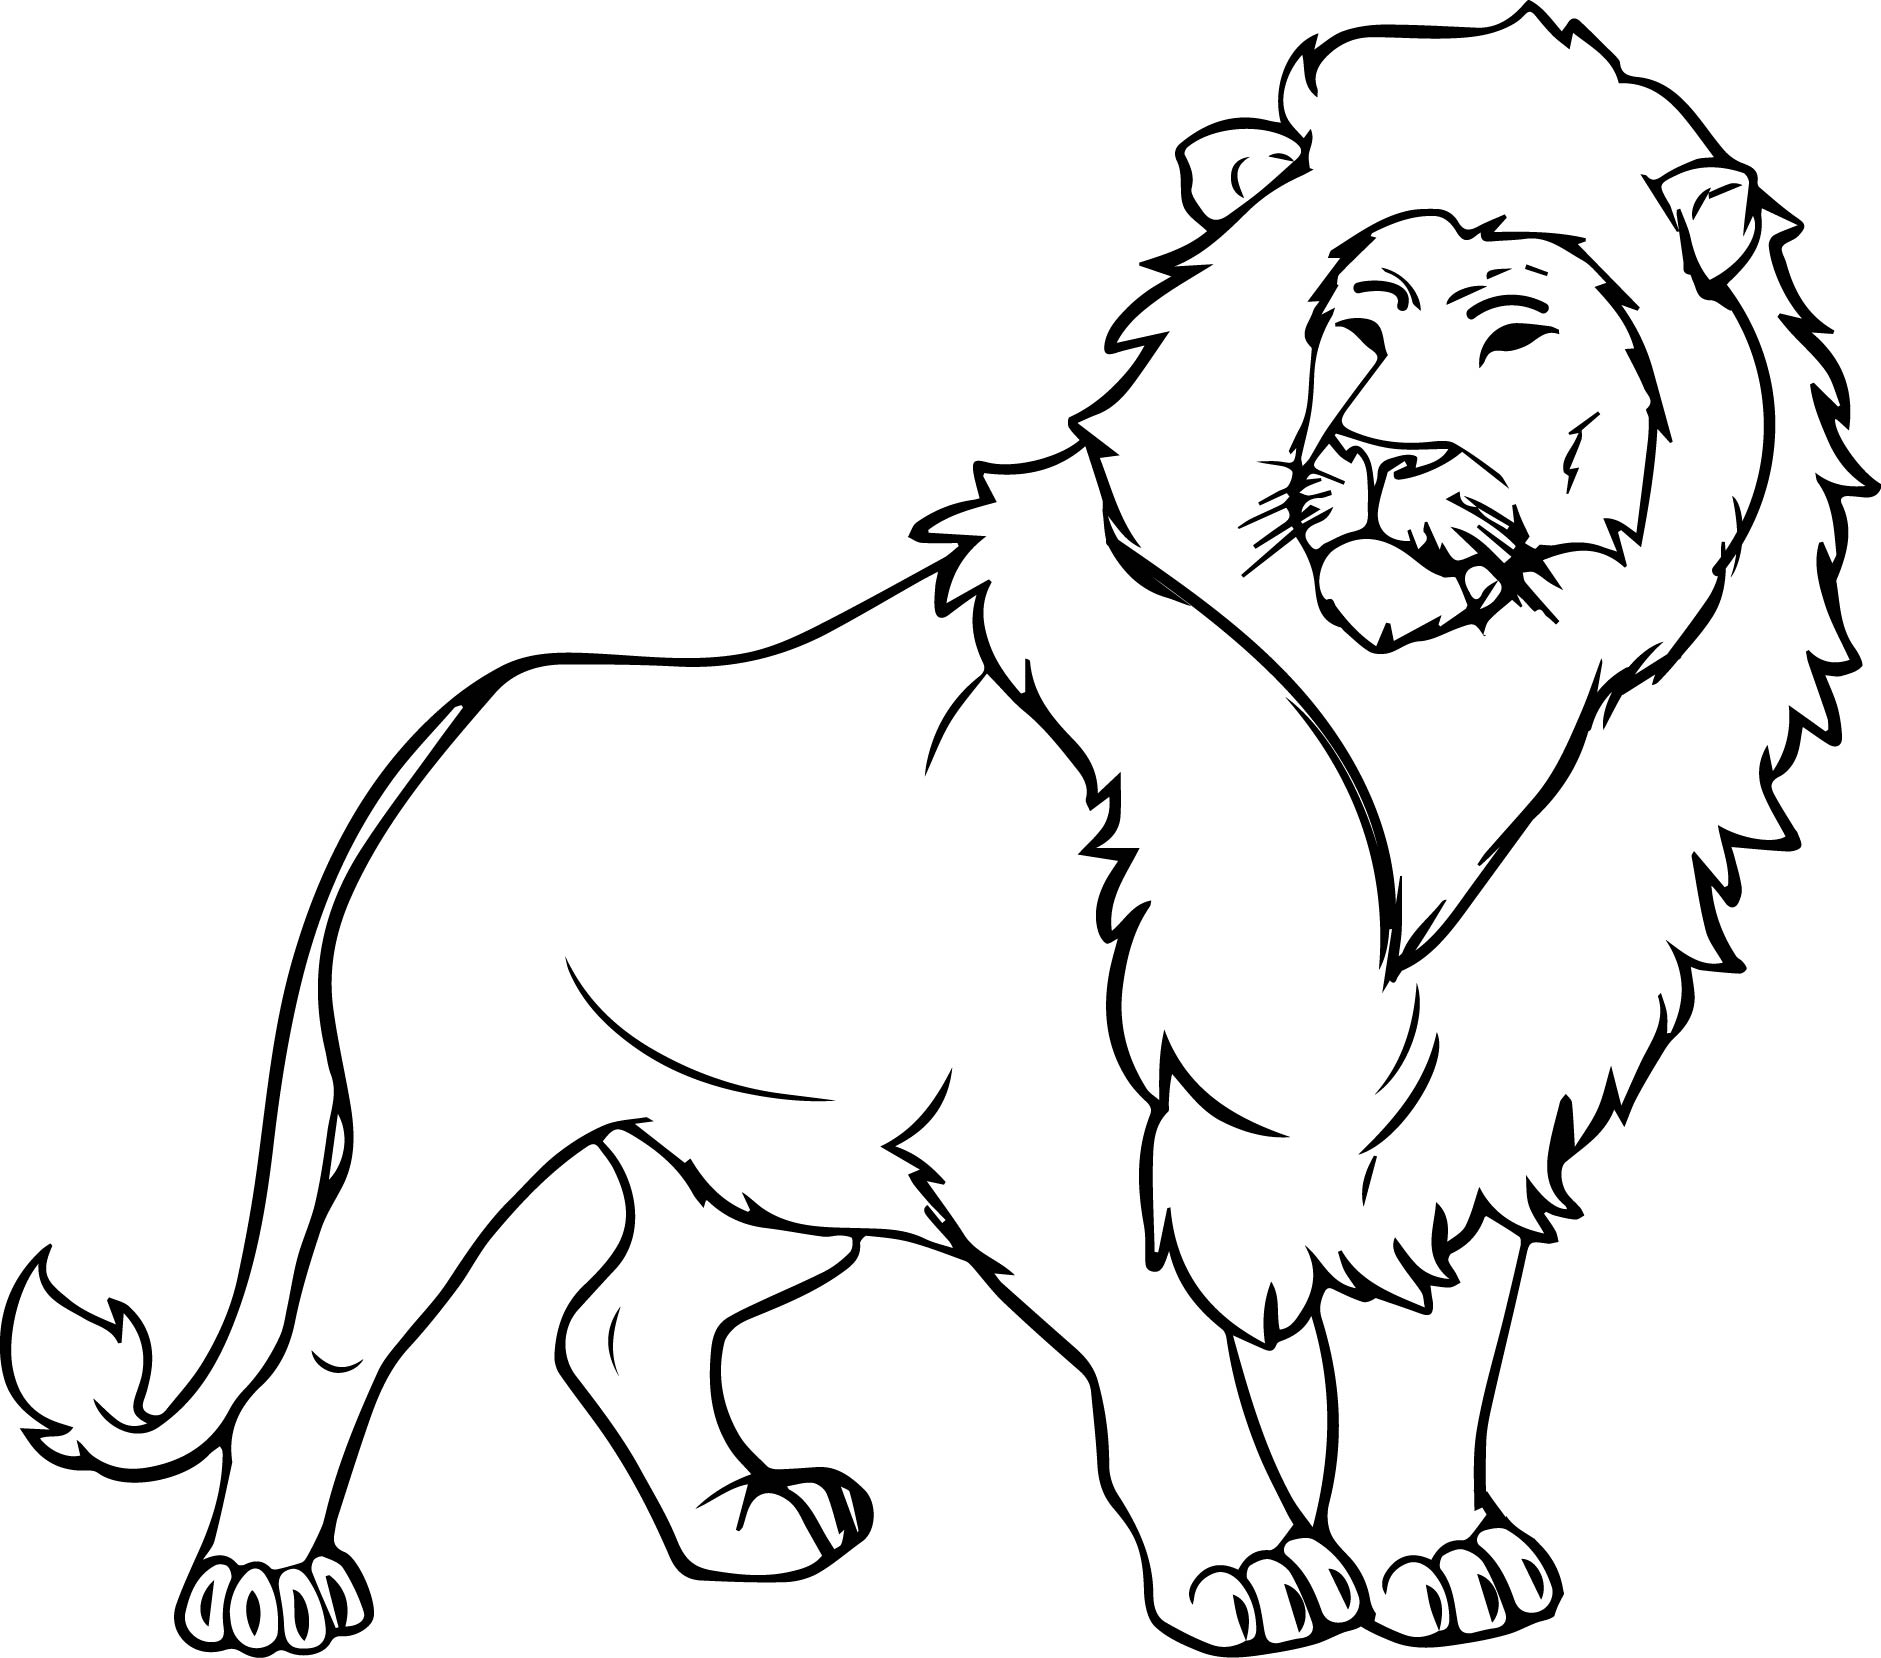 gambar sketsa binatang singa